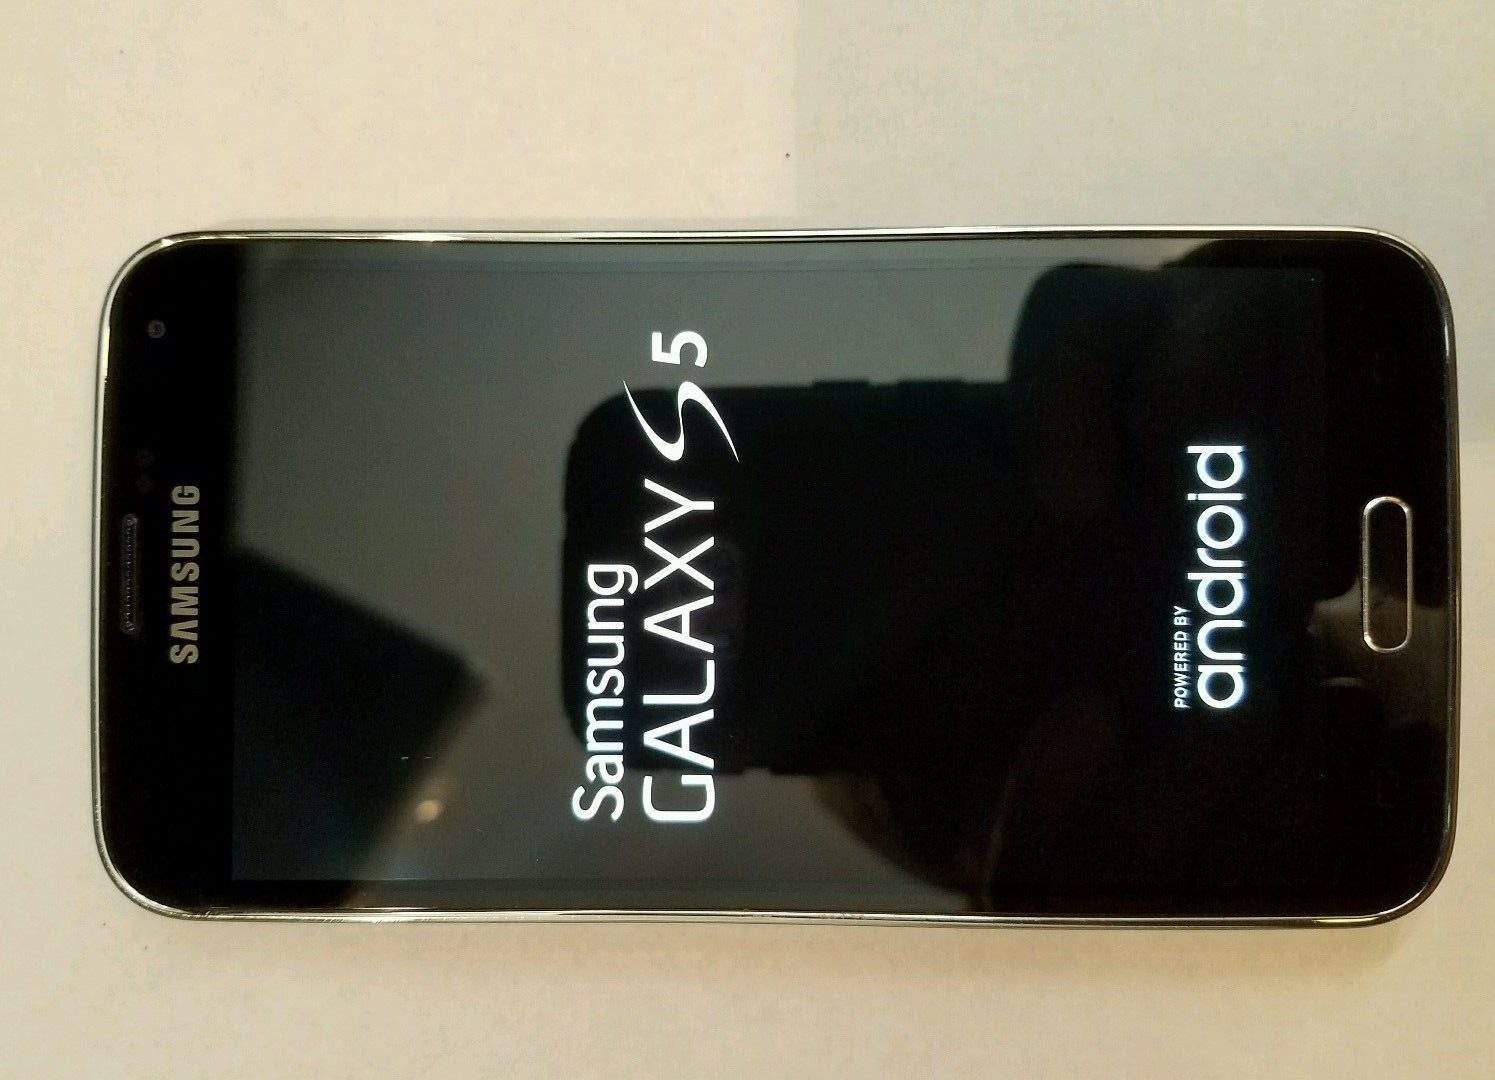 ביקורת ומפרט מלא על מכשיר סמסונג גלקסי אס 5 – Samsung Galaxy S5 Review